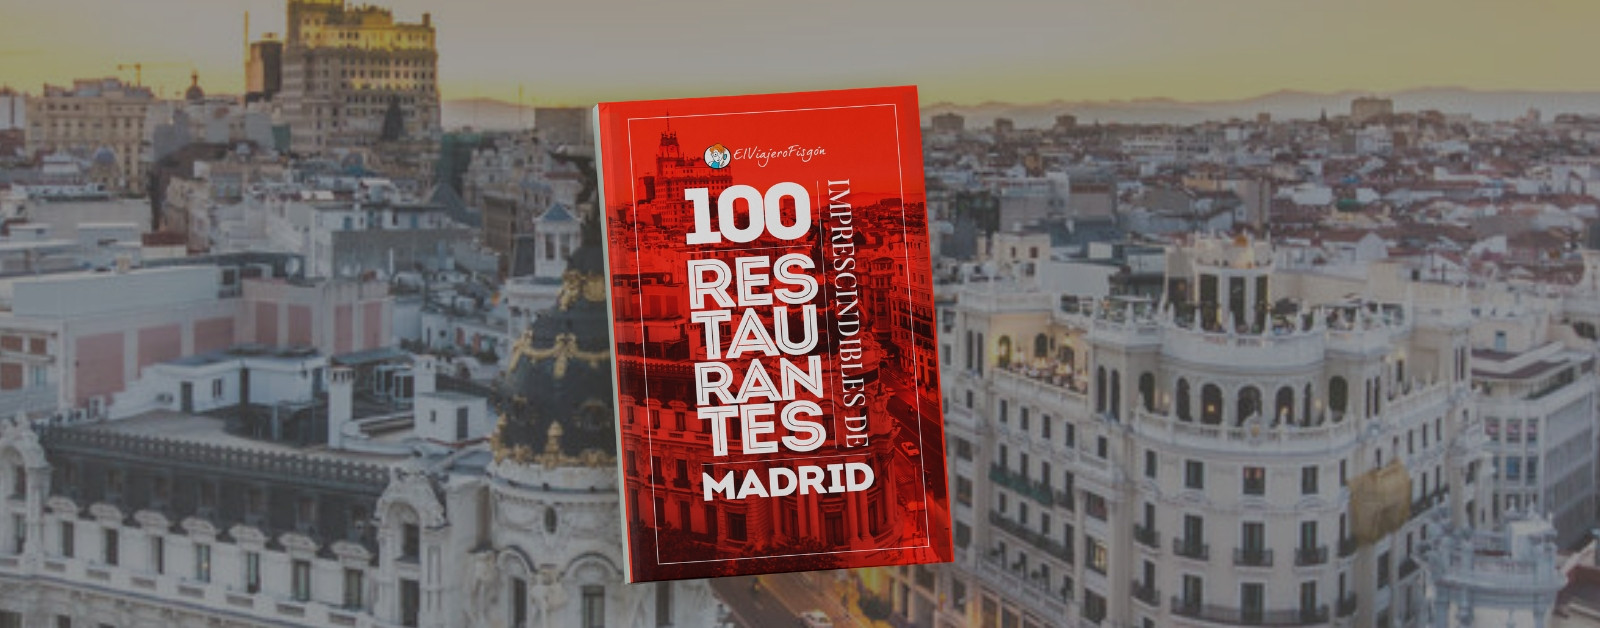 Guía de los 100 restaurantes imprescindibles de Madrid